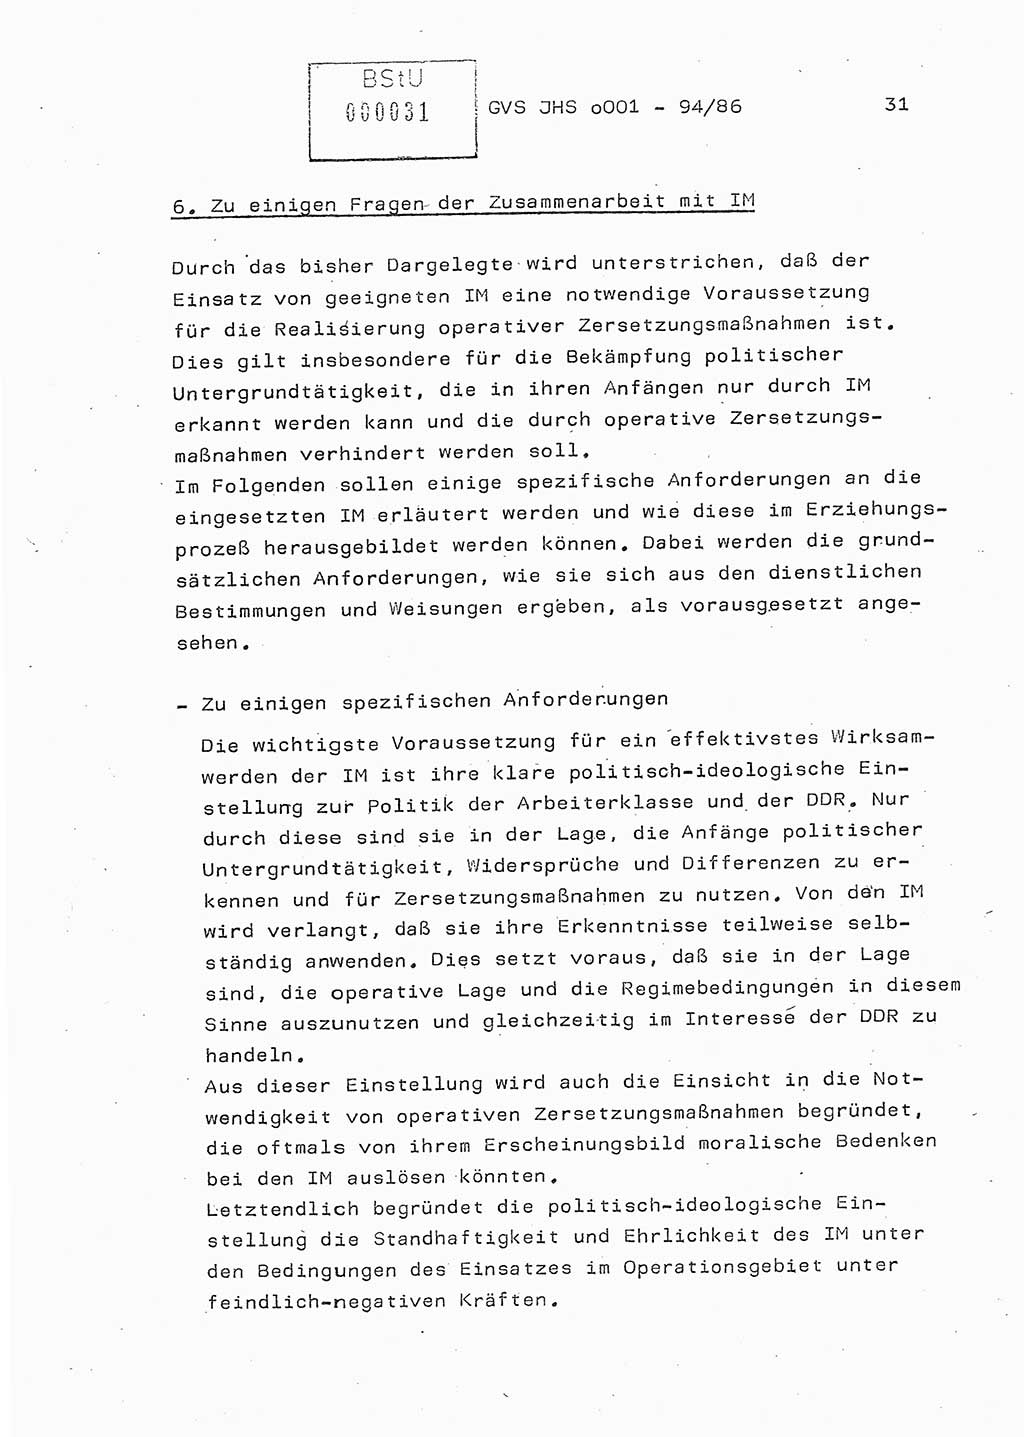 Diplomarbeit Oberleutnant Volkmar Pechmann (HA ⅩⅩ/5), Ministerium für Staatssicherheit (MfS) [Deutsche Demokratische Republik (DDR)], Juristische Hochschule (JHS), Geheime Verschlußsache (GVS) o001-94/86, Potsdam 1986, Blatt 31 (Dipl.-Arb. MfS DDR JHS GVS o001-94/86 1986, Bl. 31)